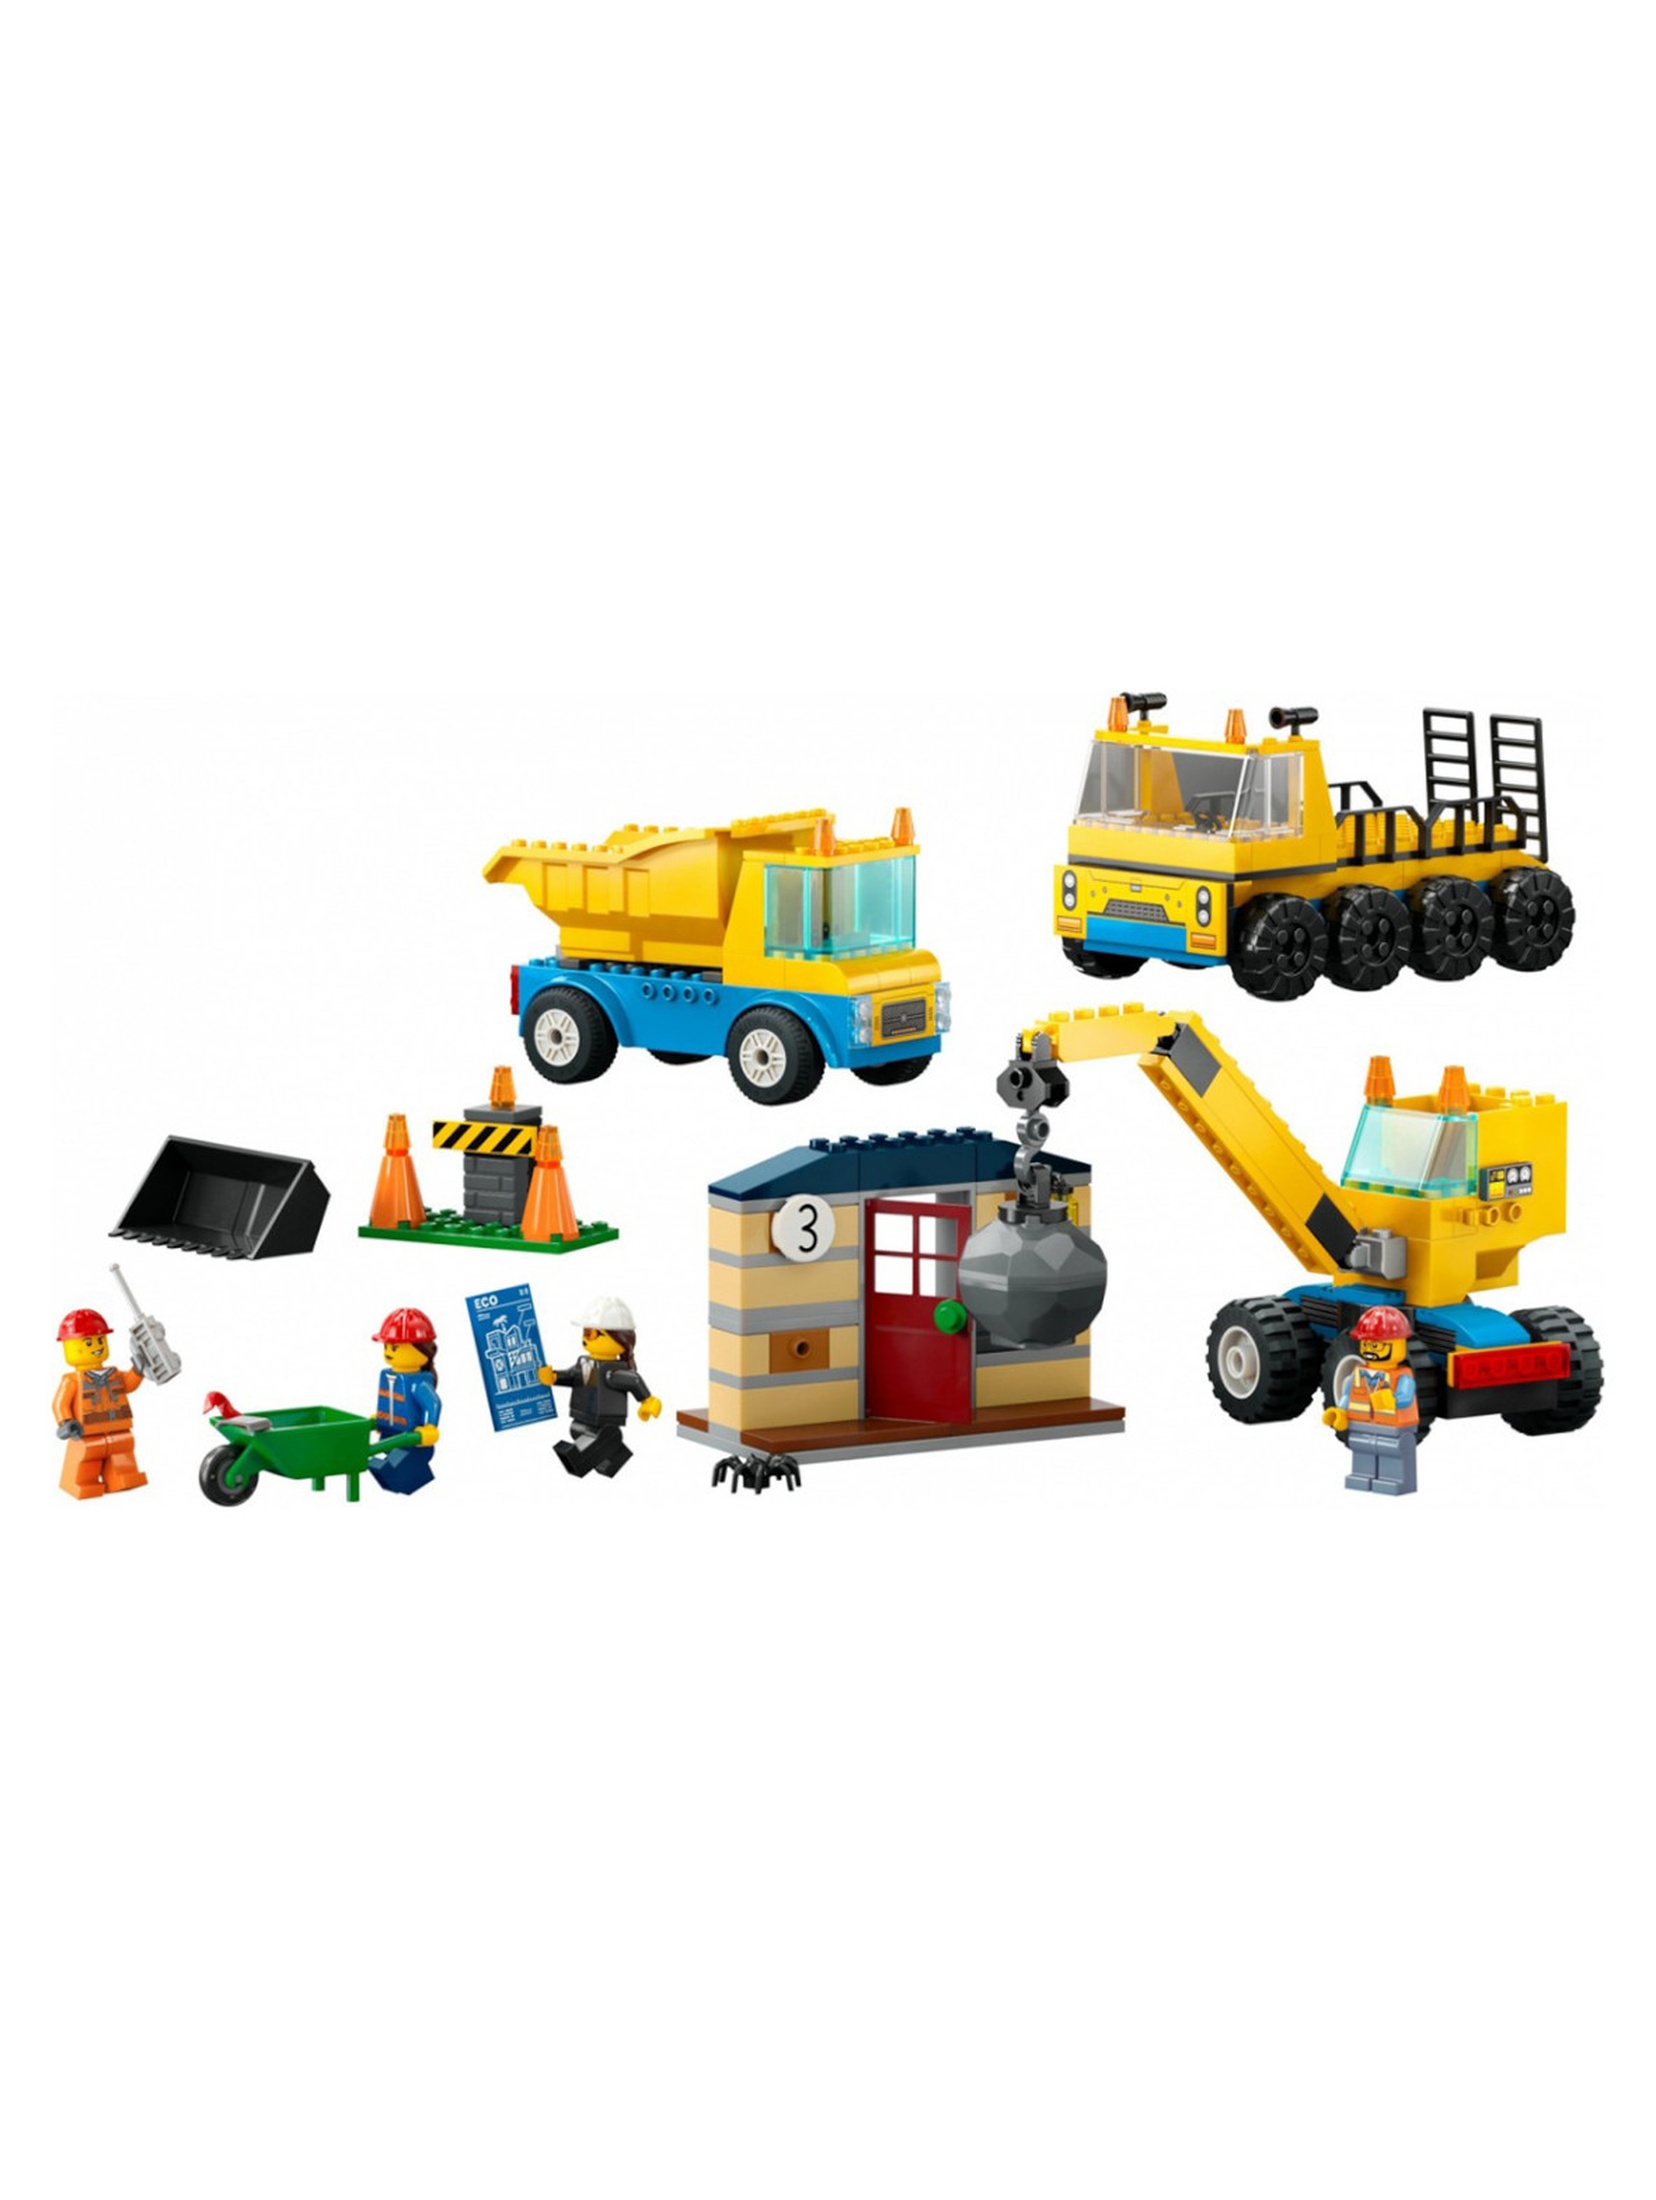 Klocki LEGO City 60391 Ciężarówki i dźwig z kulą wyburzeniową - 235 elementów, wiek 4 +